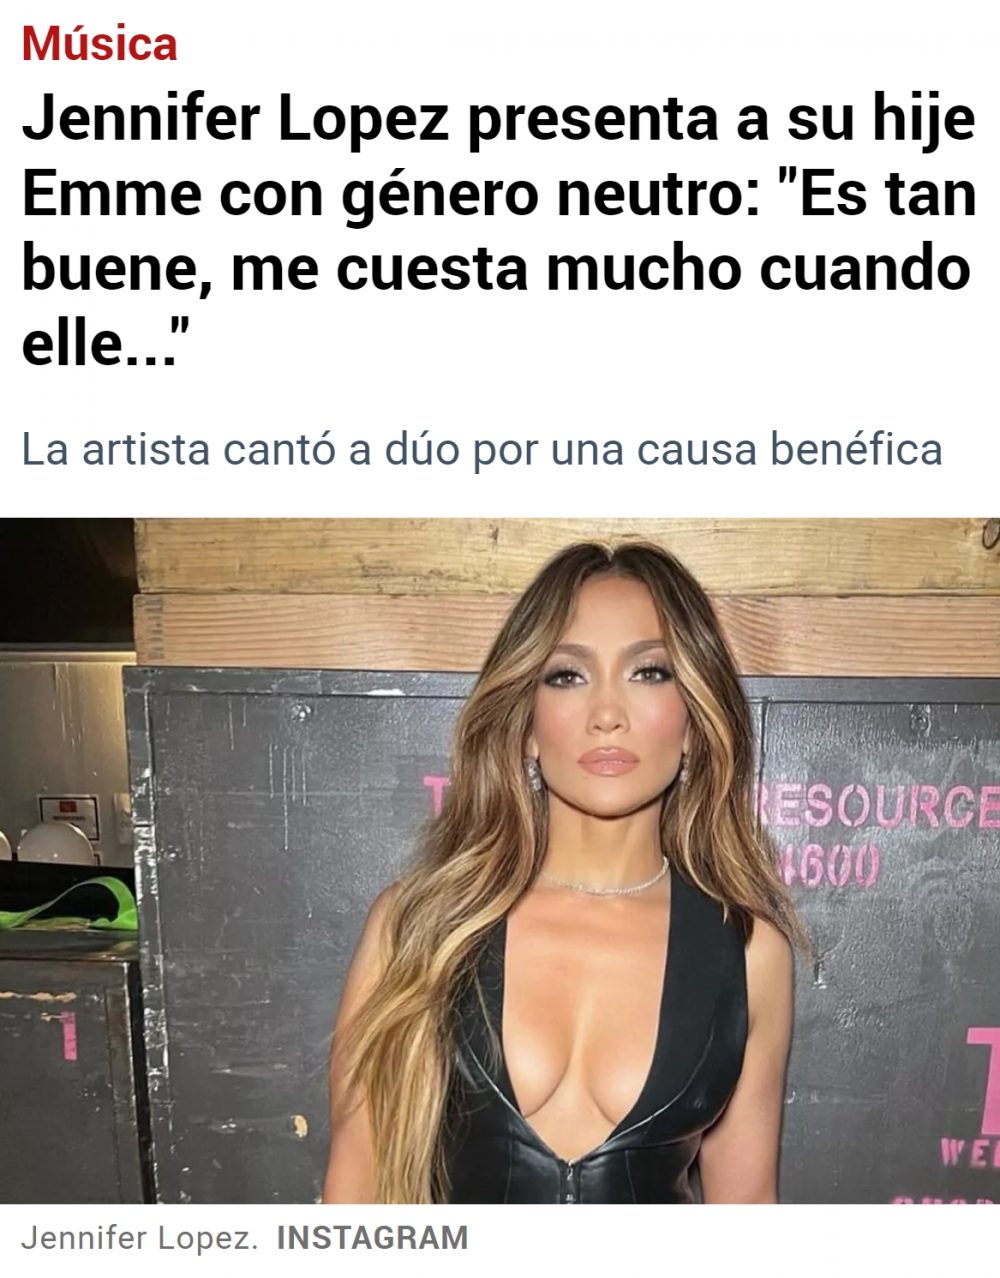 La nueva hija de Jennifer Lopez es de género neutro